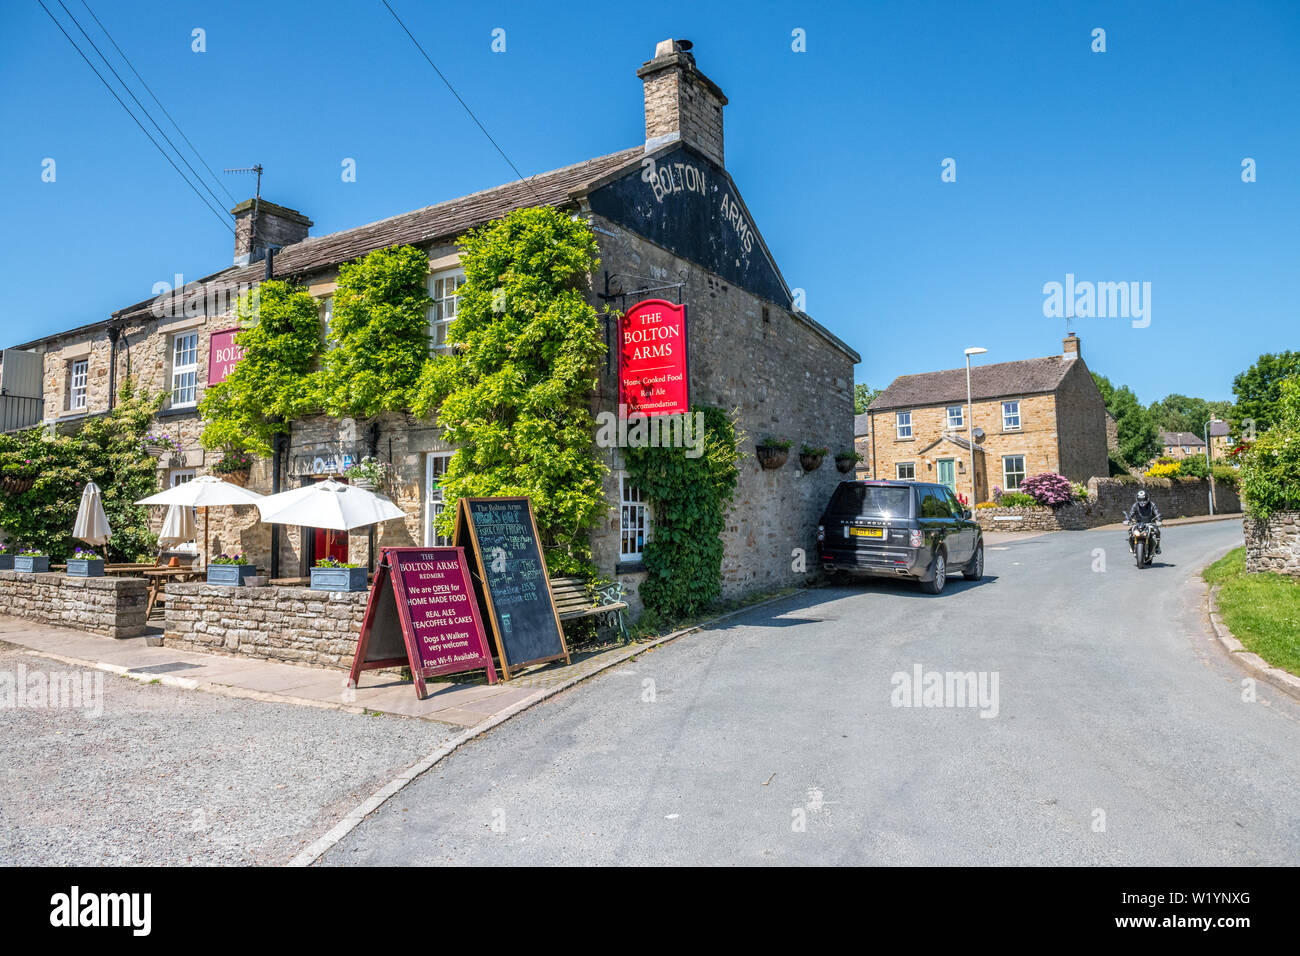 Die Schraubean der Arme, ein Dorf Pub in den Yorkshire Dales Dorf Redmire, Yorkshire, England, UK. Stockfoto